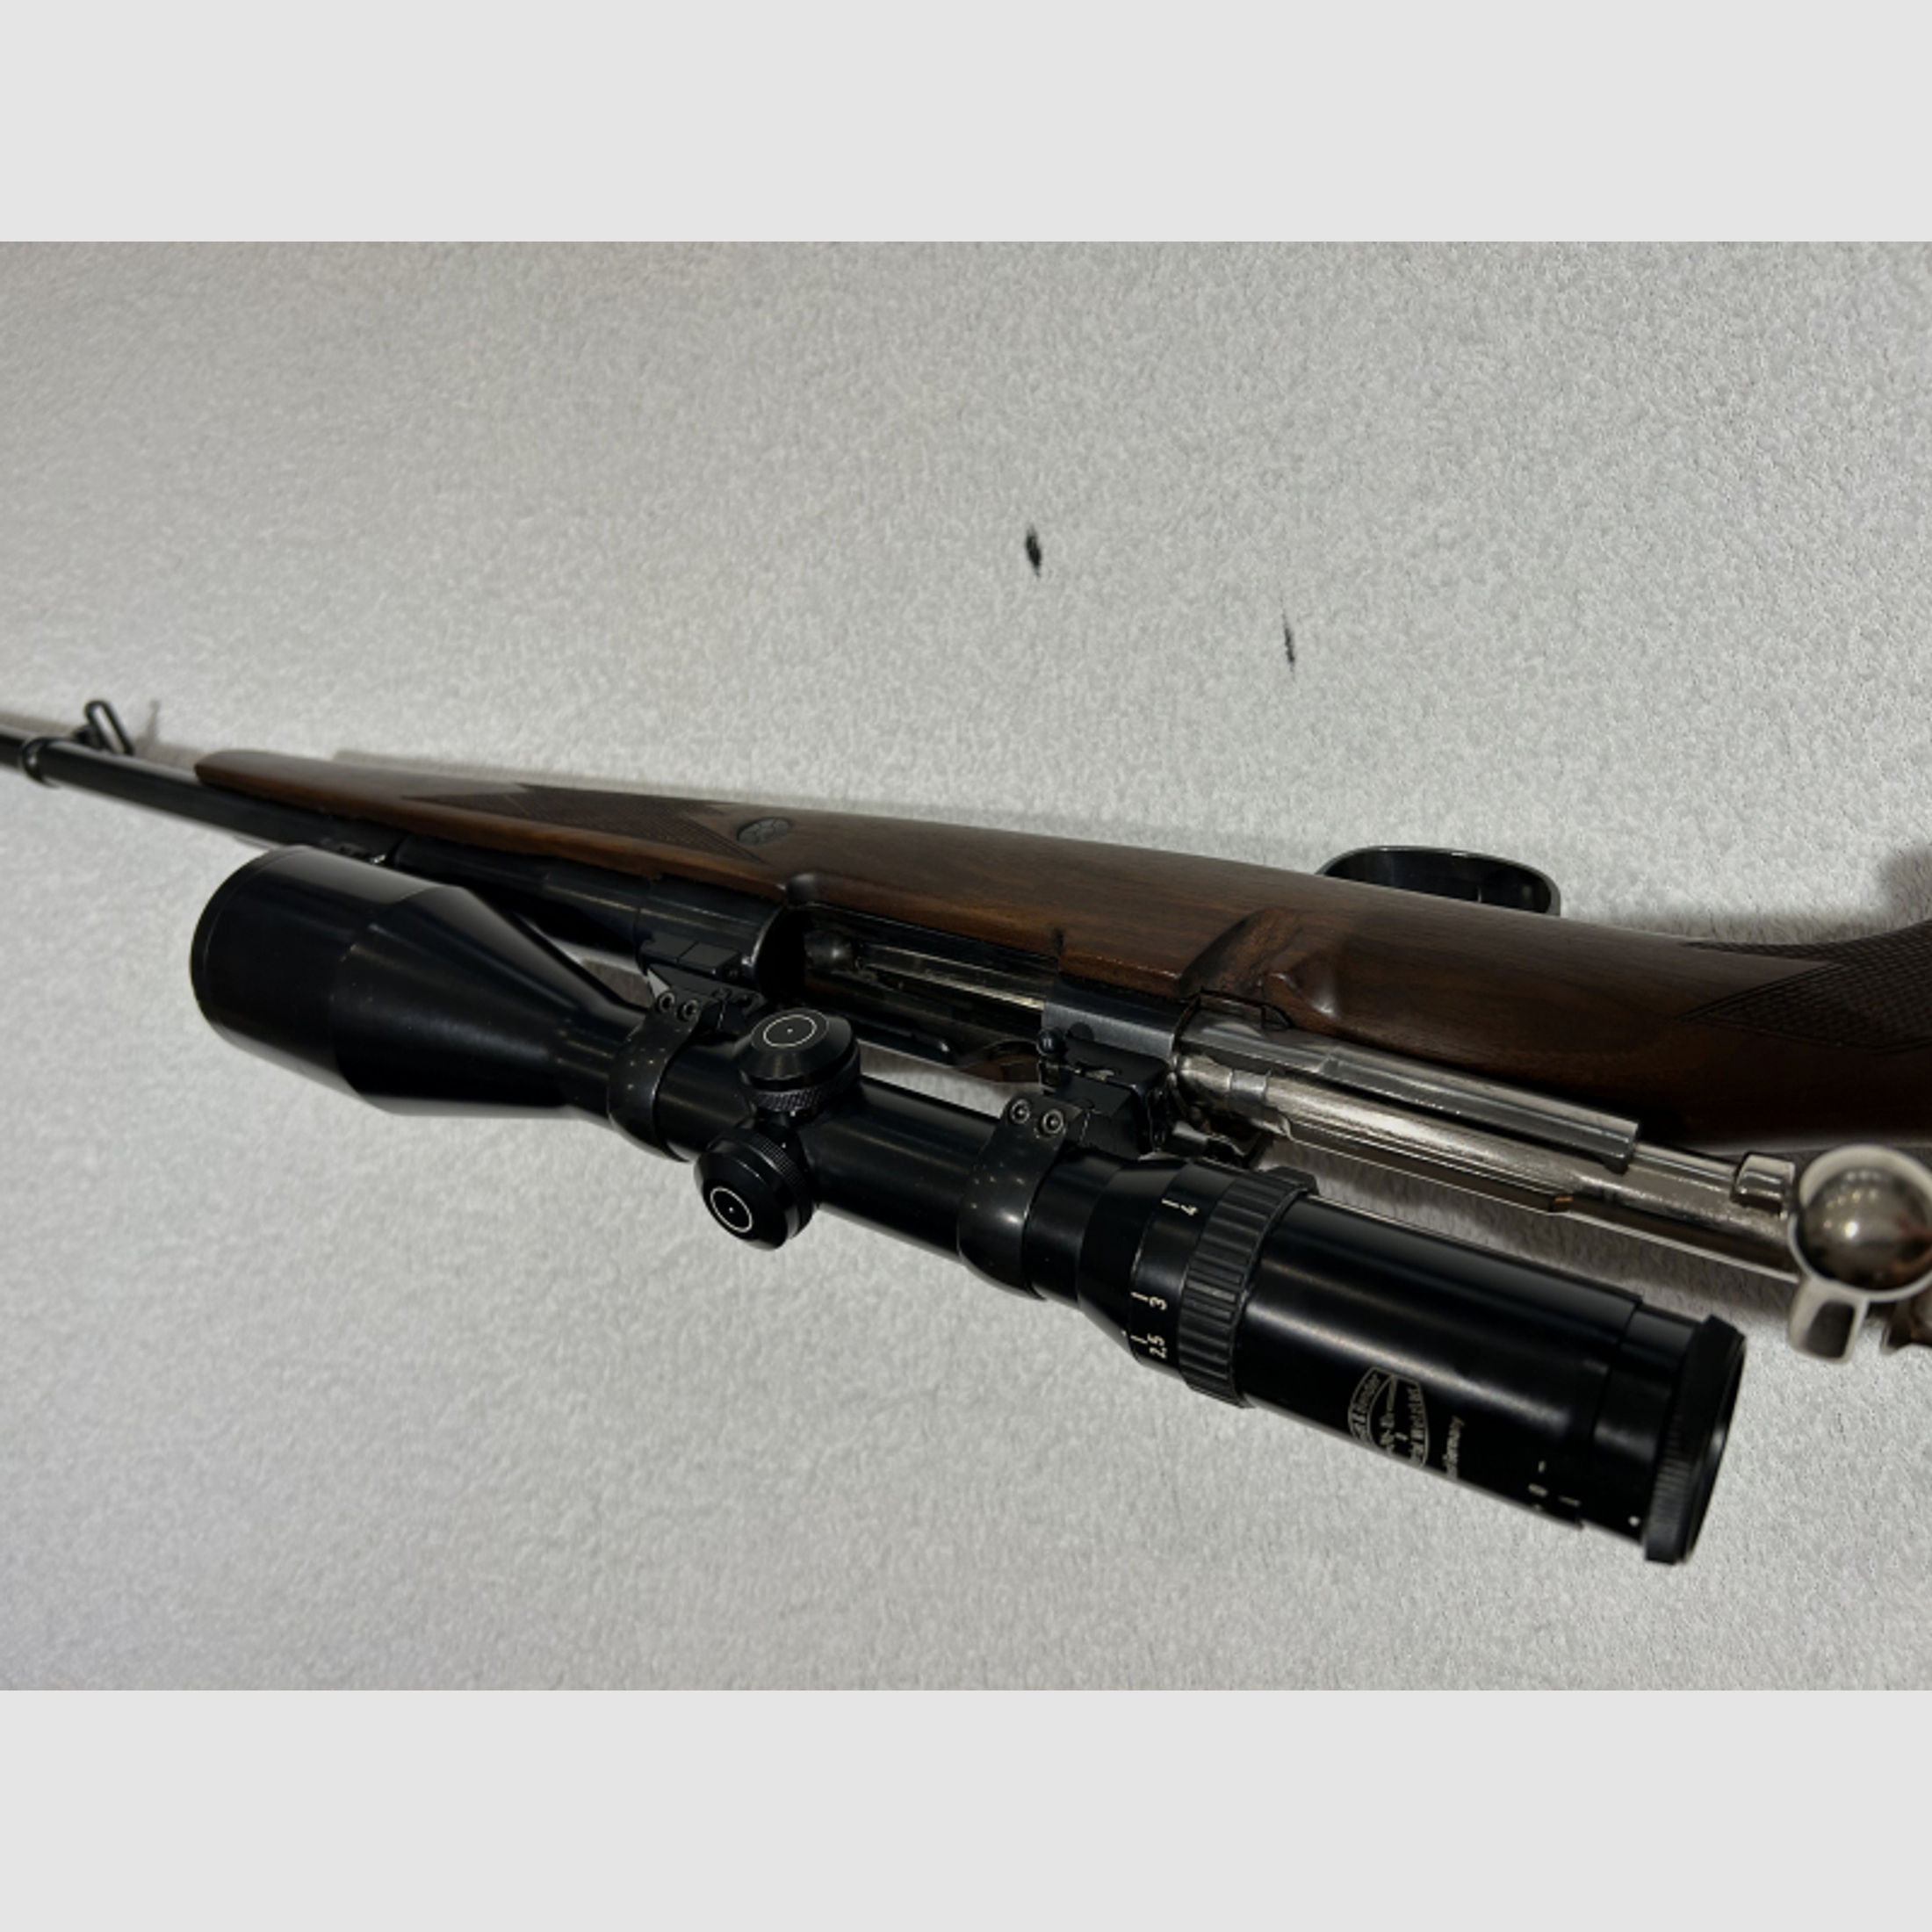 Repetierbüchse 9,3x64 im System Mauser mit Zielfernrohr